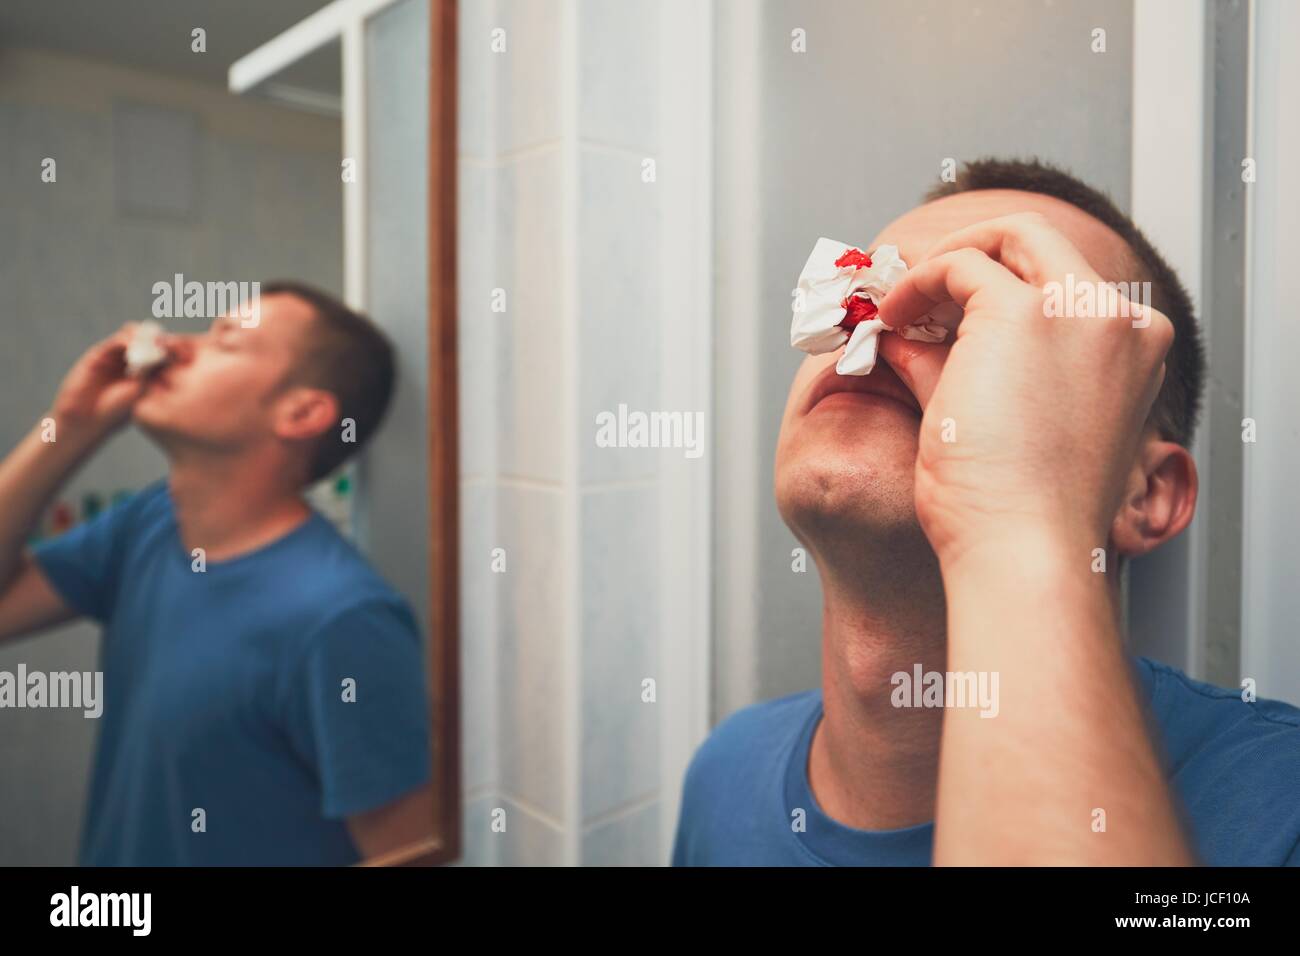 Mann mit Nasenbluten im Badezimmer. Für Themen wie Krankheit, Unfall oder Gewalt. Stockfoto